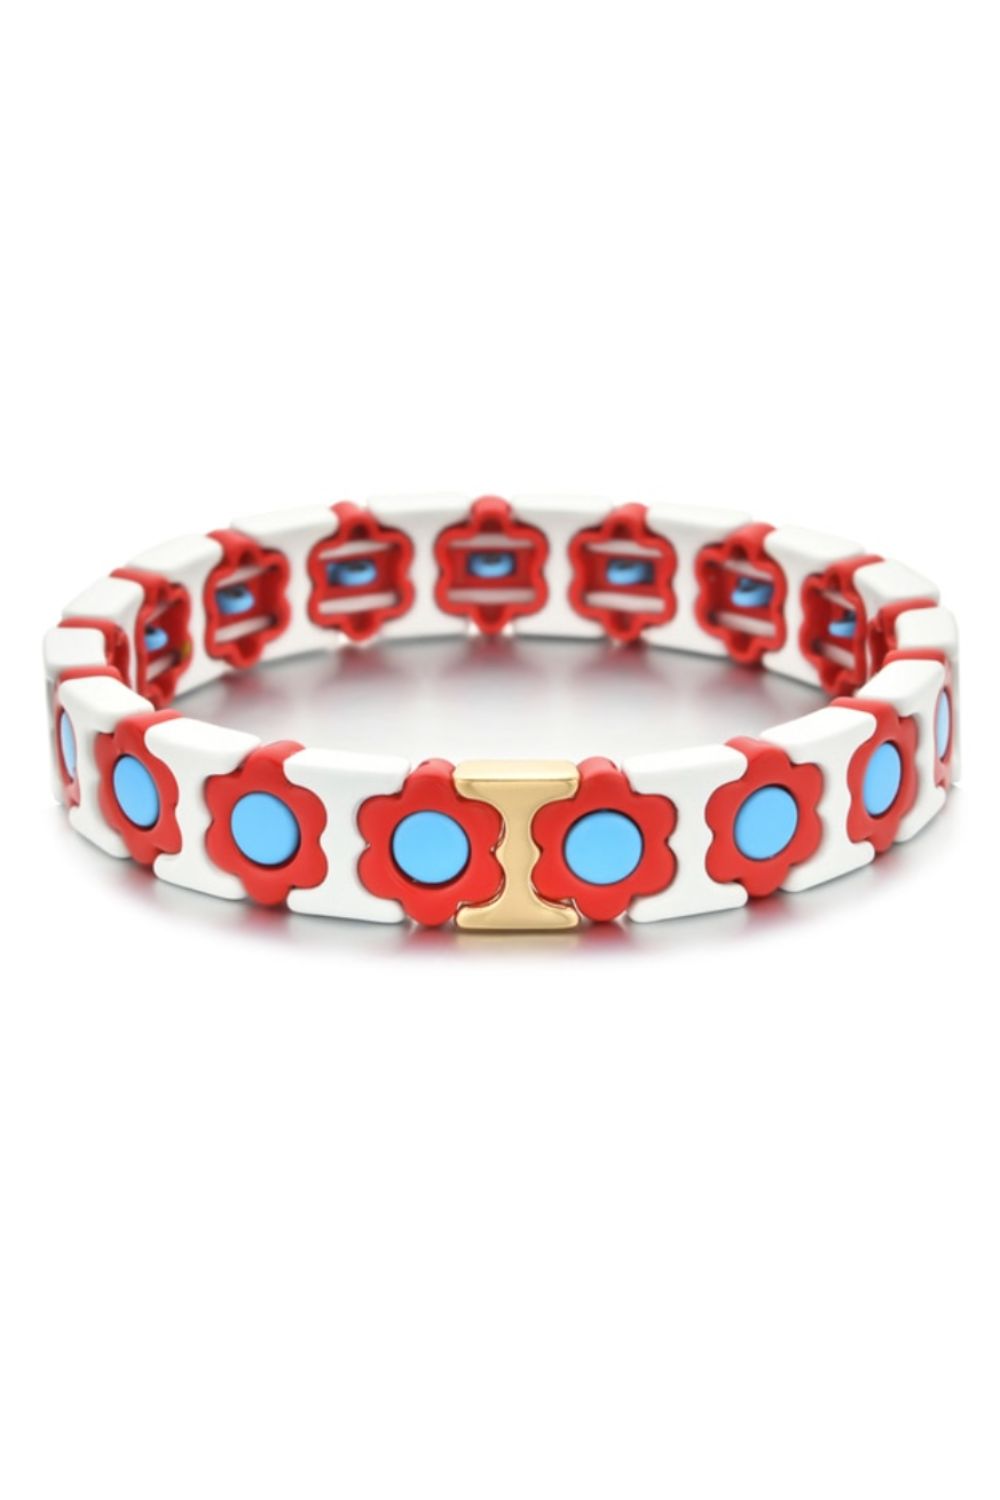 Daisy chain bracelet - white/aqua/red